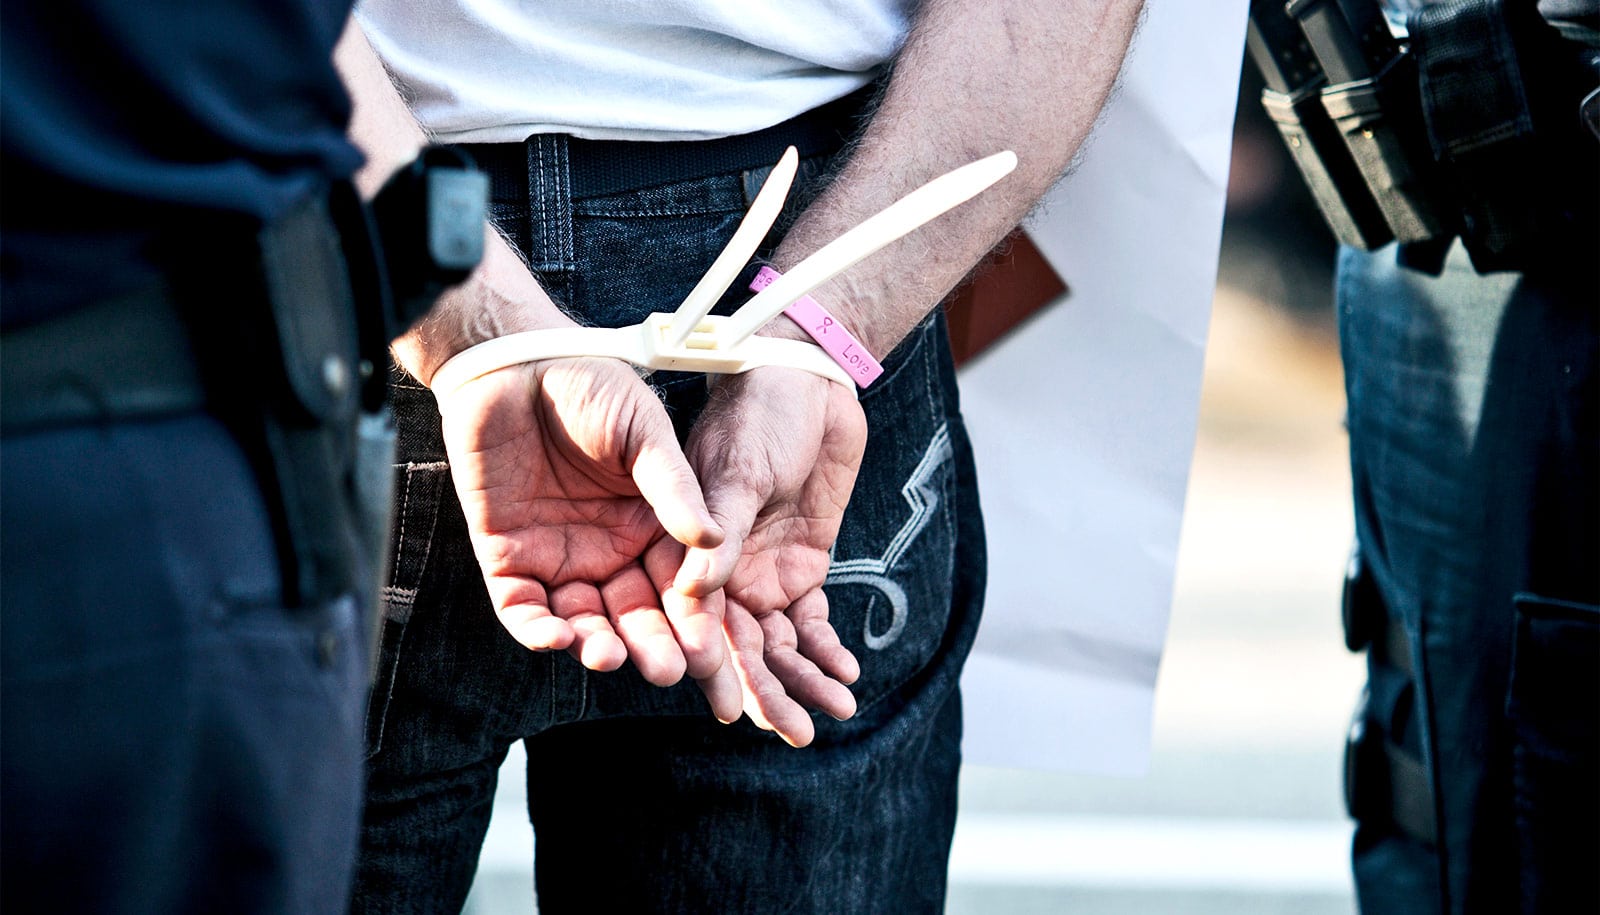 Share by Twitter. zip tie handcuffs in arrest. 